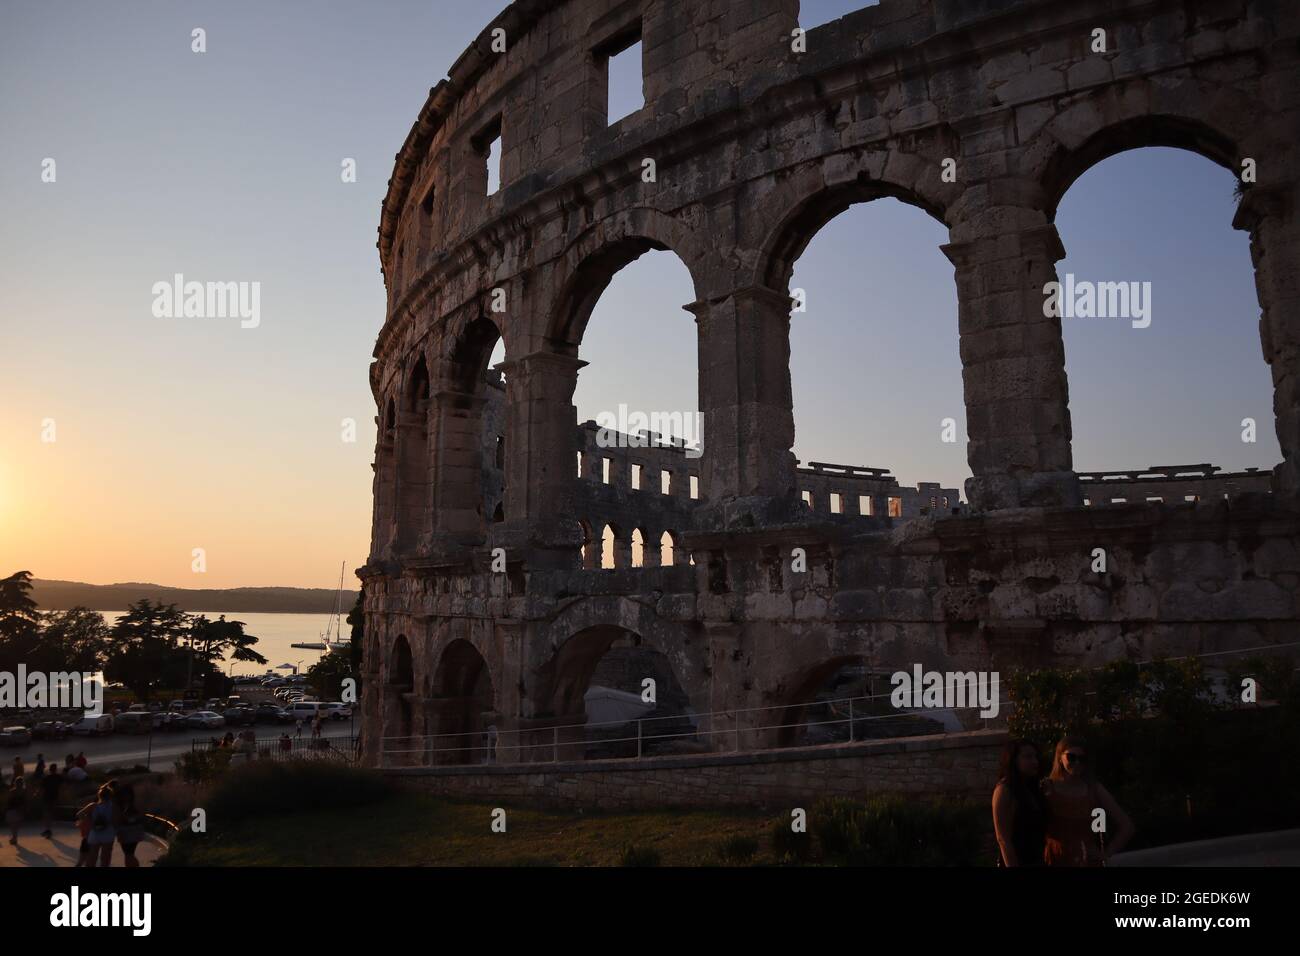 Römische Arena aus dem ersten Jahrhundert in Pula. Zweitgrößte Arena in Europa. Bild am Abend mit viel Licht aufgenommen. Stockfoto